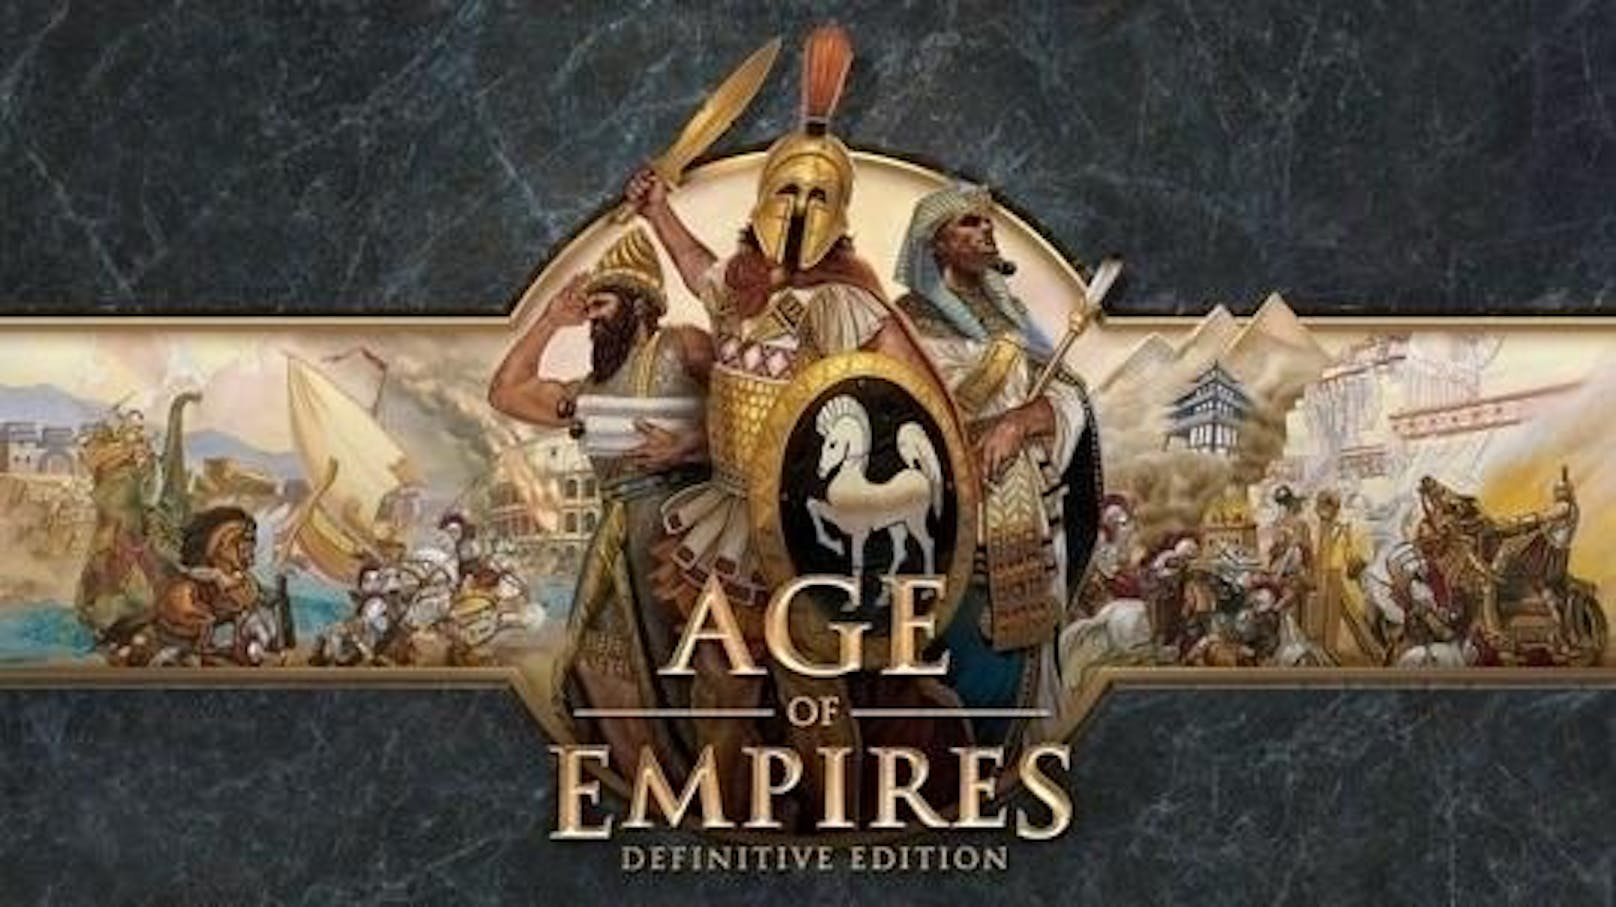 Am 20. Februar erscheint Age of Empires: Definitive Edition für Windows 10 PC zu einem Preis von 19,99 Euro. Die Neuauflage des Klassikers kommt mit vielen neuen Features sowie 4K-Auflösung und bietet sowohl alten Strategie-Veteranen als auch Neueinsteigern ein Echtzeitstrategie-Spiel der Superlative.